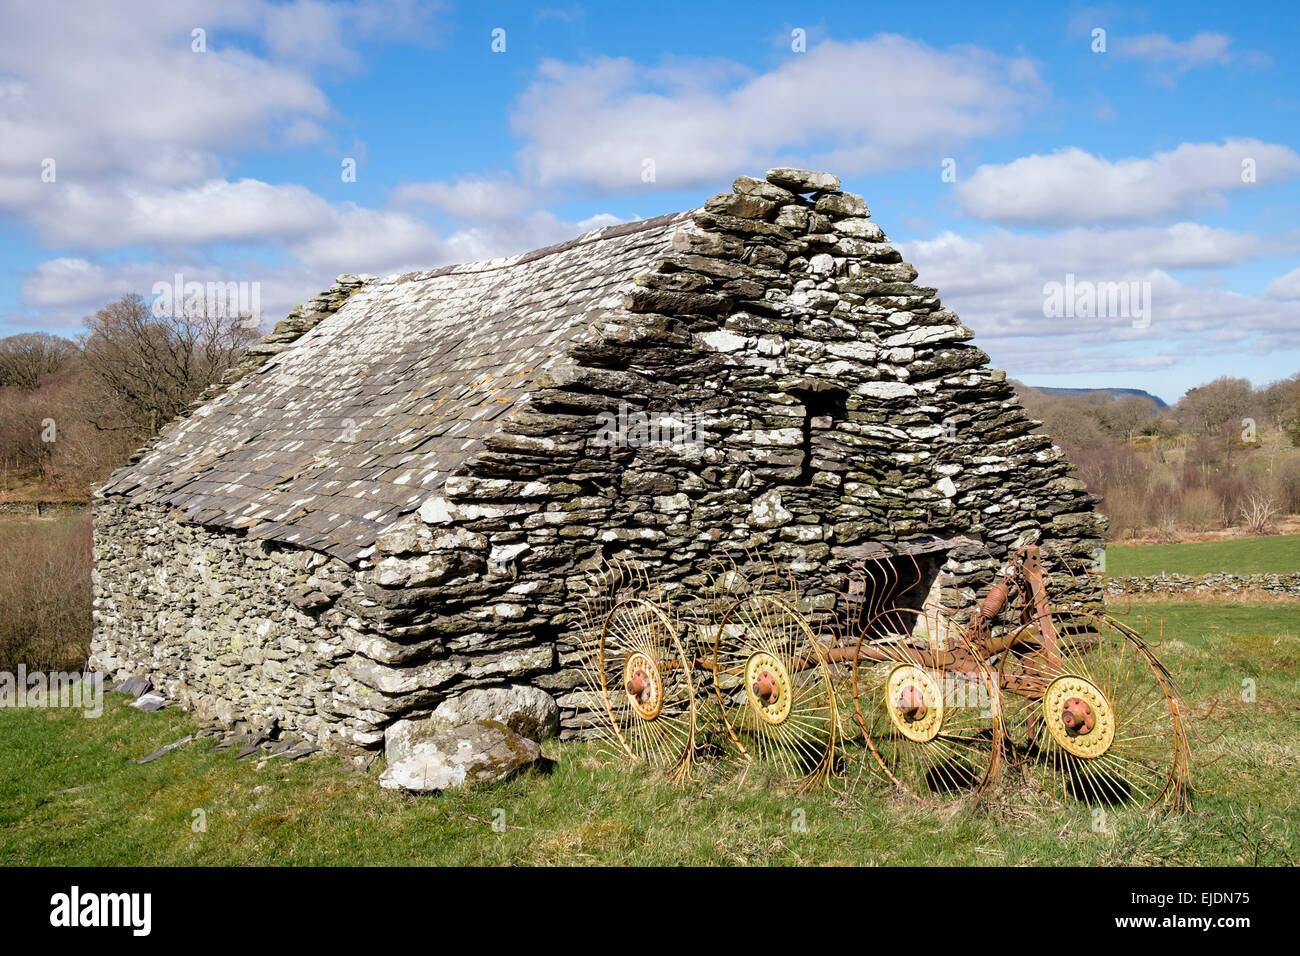 L'outillage agricole vieux râteau de foin à l'extérieur une grange en pierre en campagne près de Capel Garmon, Conwy, au nord du Pays de Galles, Royaume-Uni, Angleterre Banque D'Images